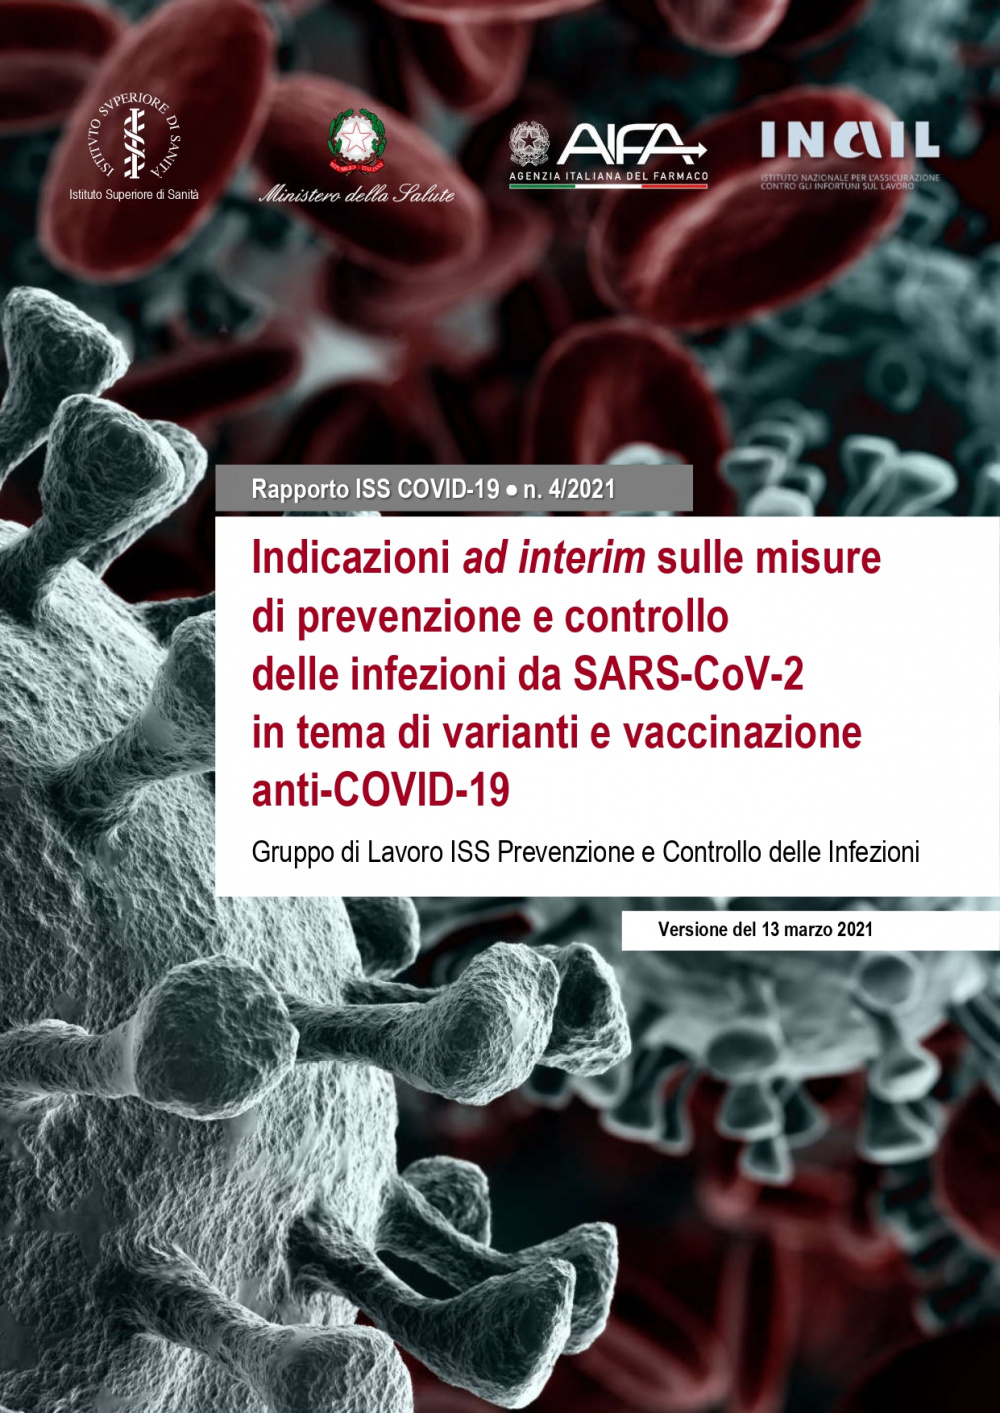 ndicazioni ad interim sulle misure di prevenzione e controllo delle infezioni da SARS-CoV-2 in tema di varianti e vaccinazione anti-COVID-19 pag 1